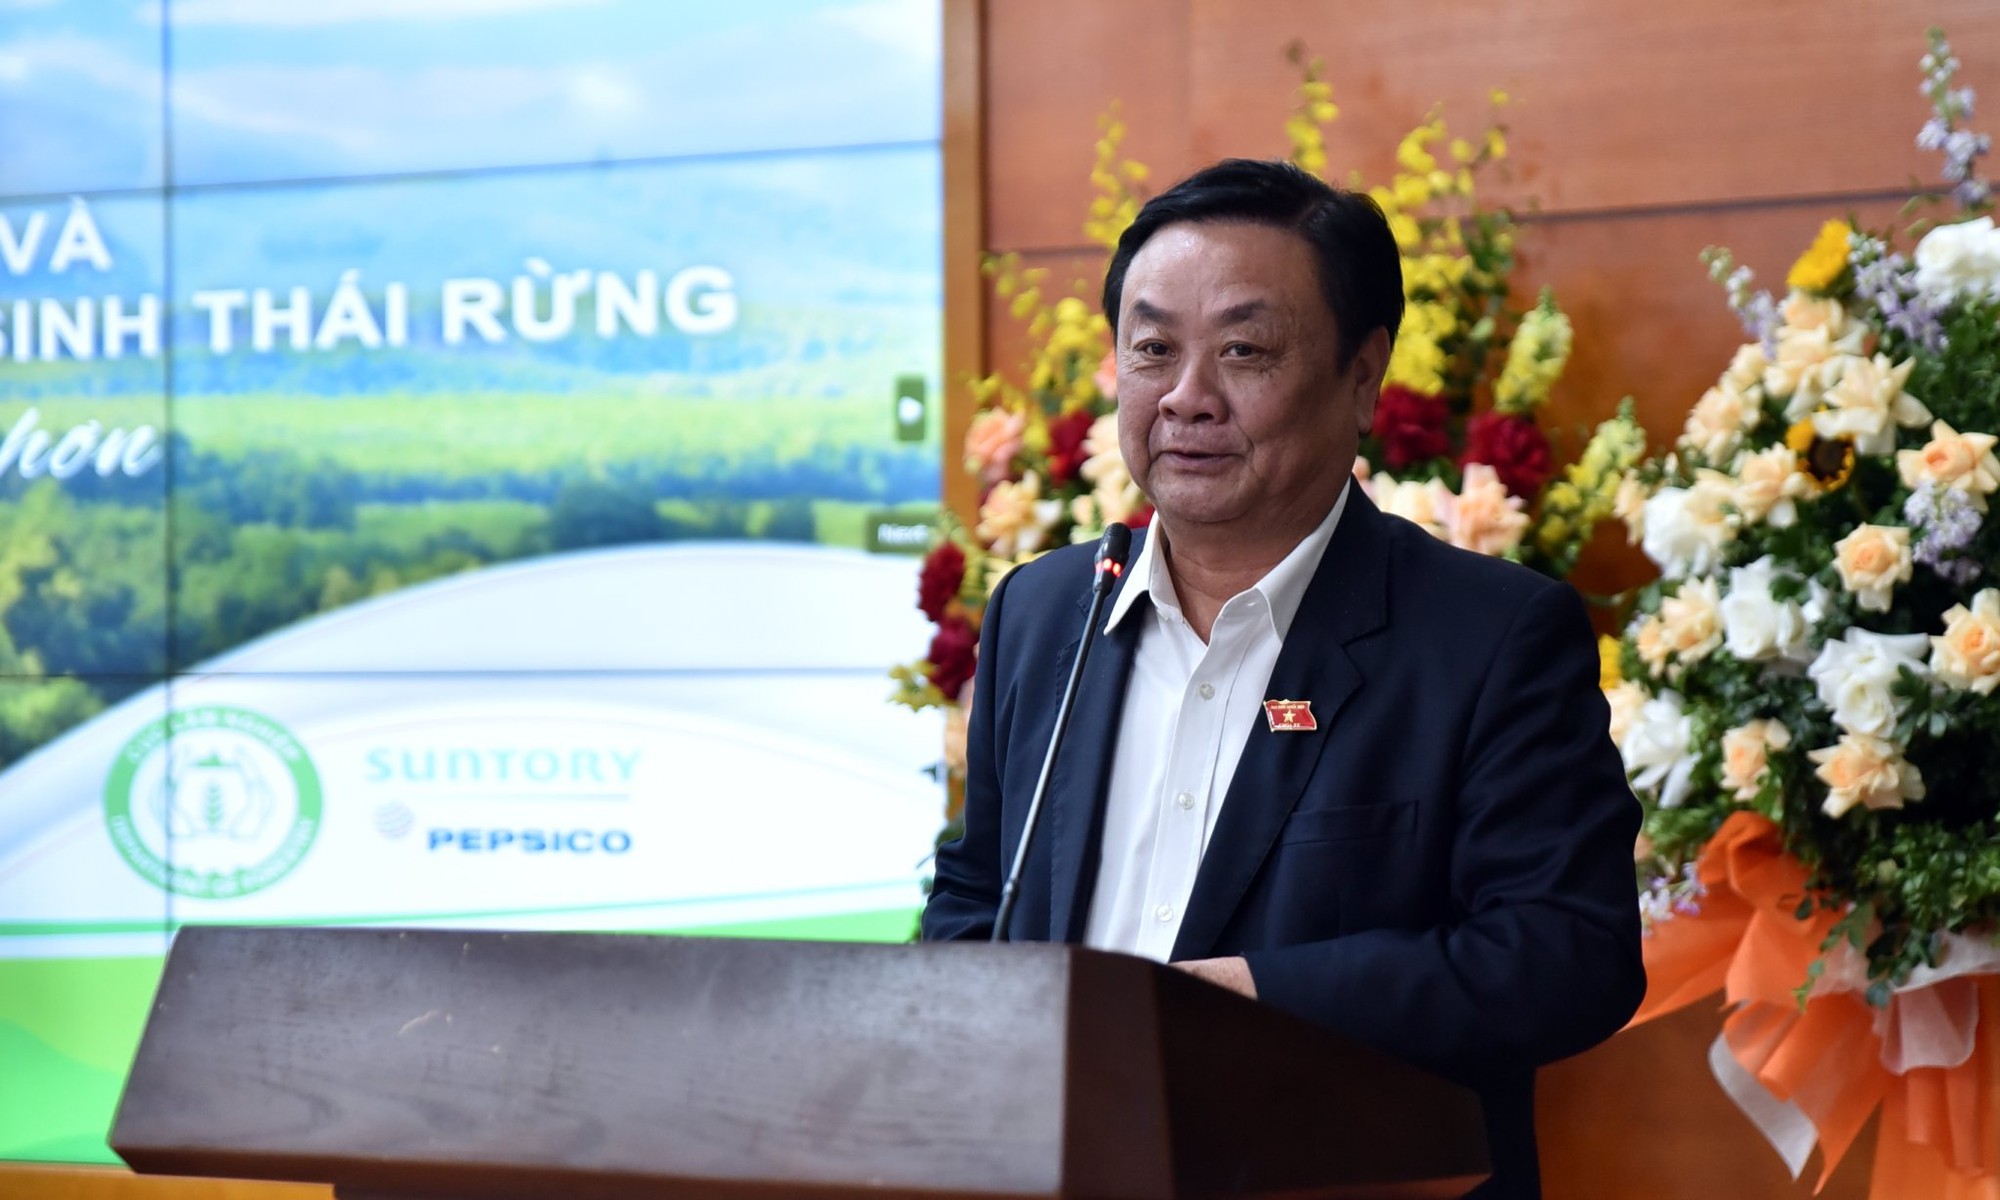 Bộ trưởng Lê Minh Hoan: Nhìn rừng không chỉ có gỗ mà còn là văn hóa, tín ngưỡng  - Ảnh 1.